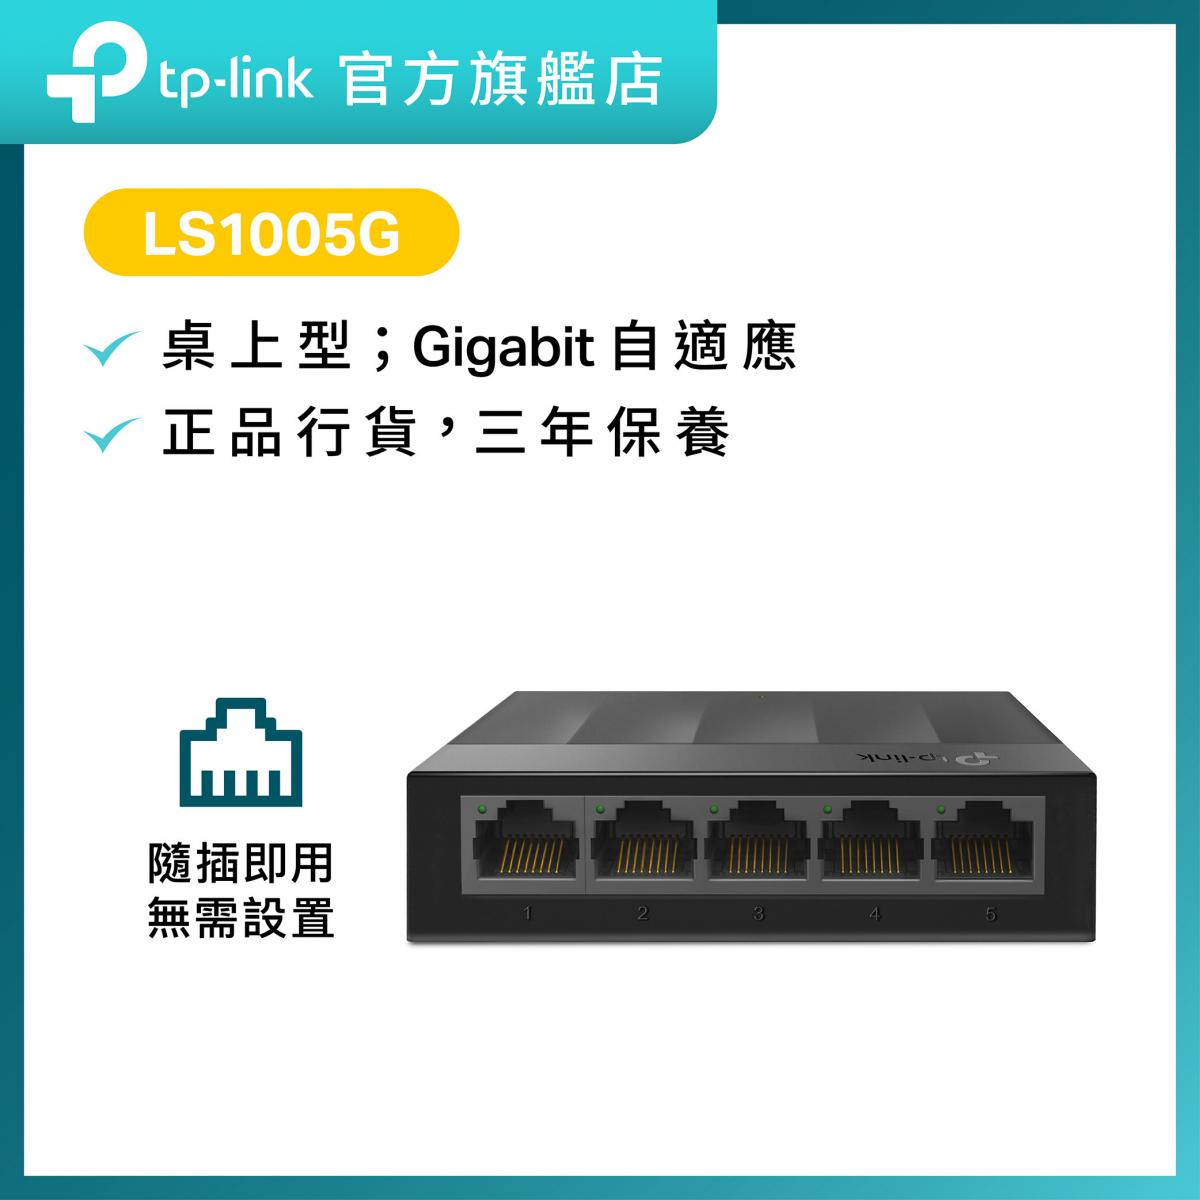 LS1005G 5埠 10/100/1000Mbps 桌上型交換機